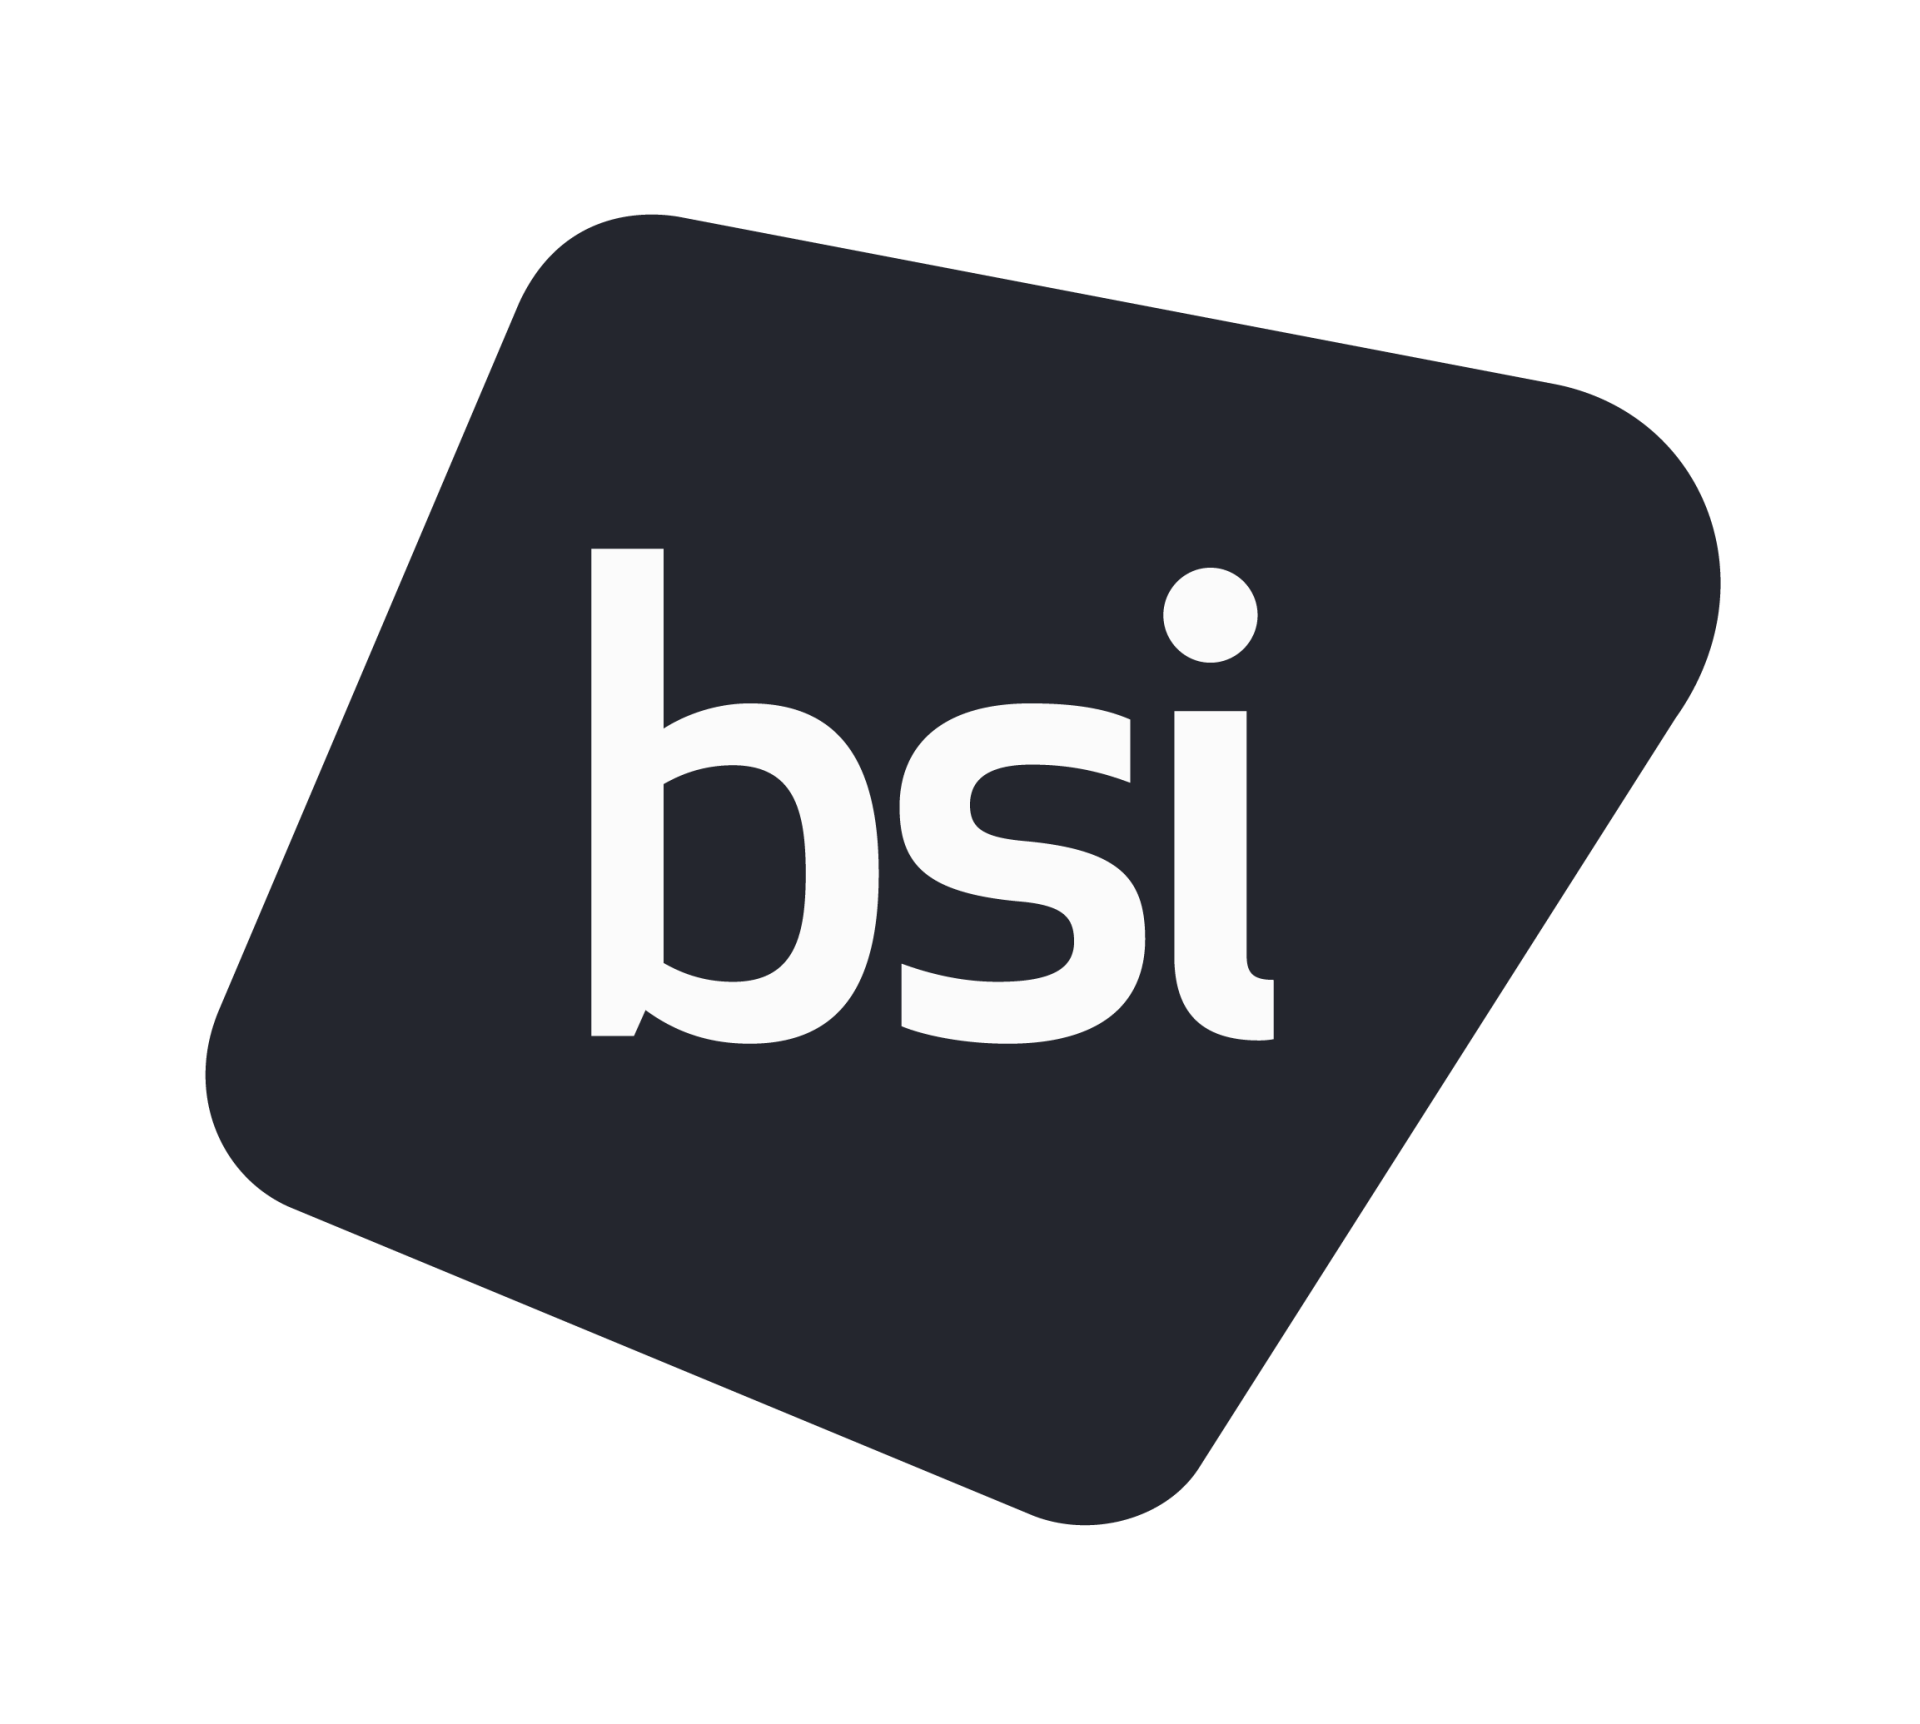 British Standards Institute Logo